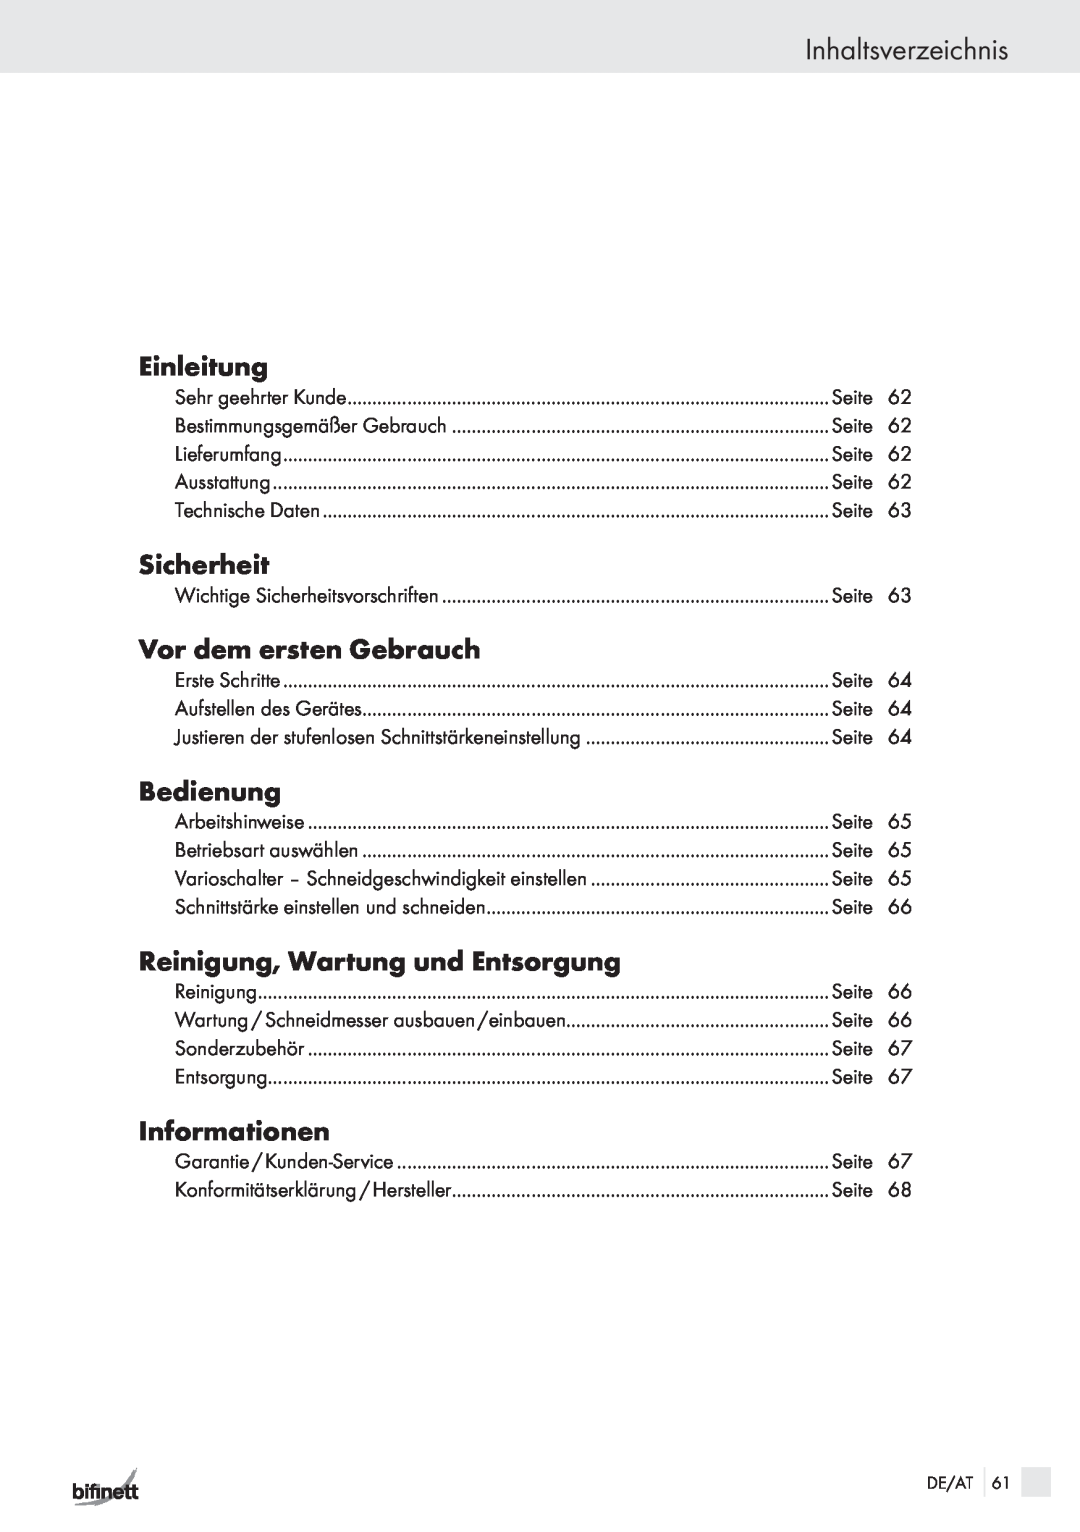 Bifinett KH 150 manual Inhaltsverzeichnis, Einleitung, Sicherheit, Vor dem ersten Gebrauch, Bedienung, Informationen 